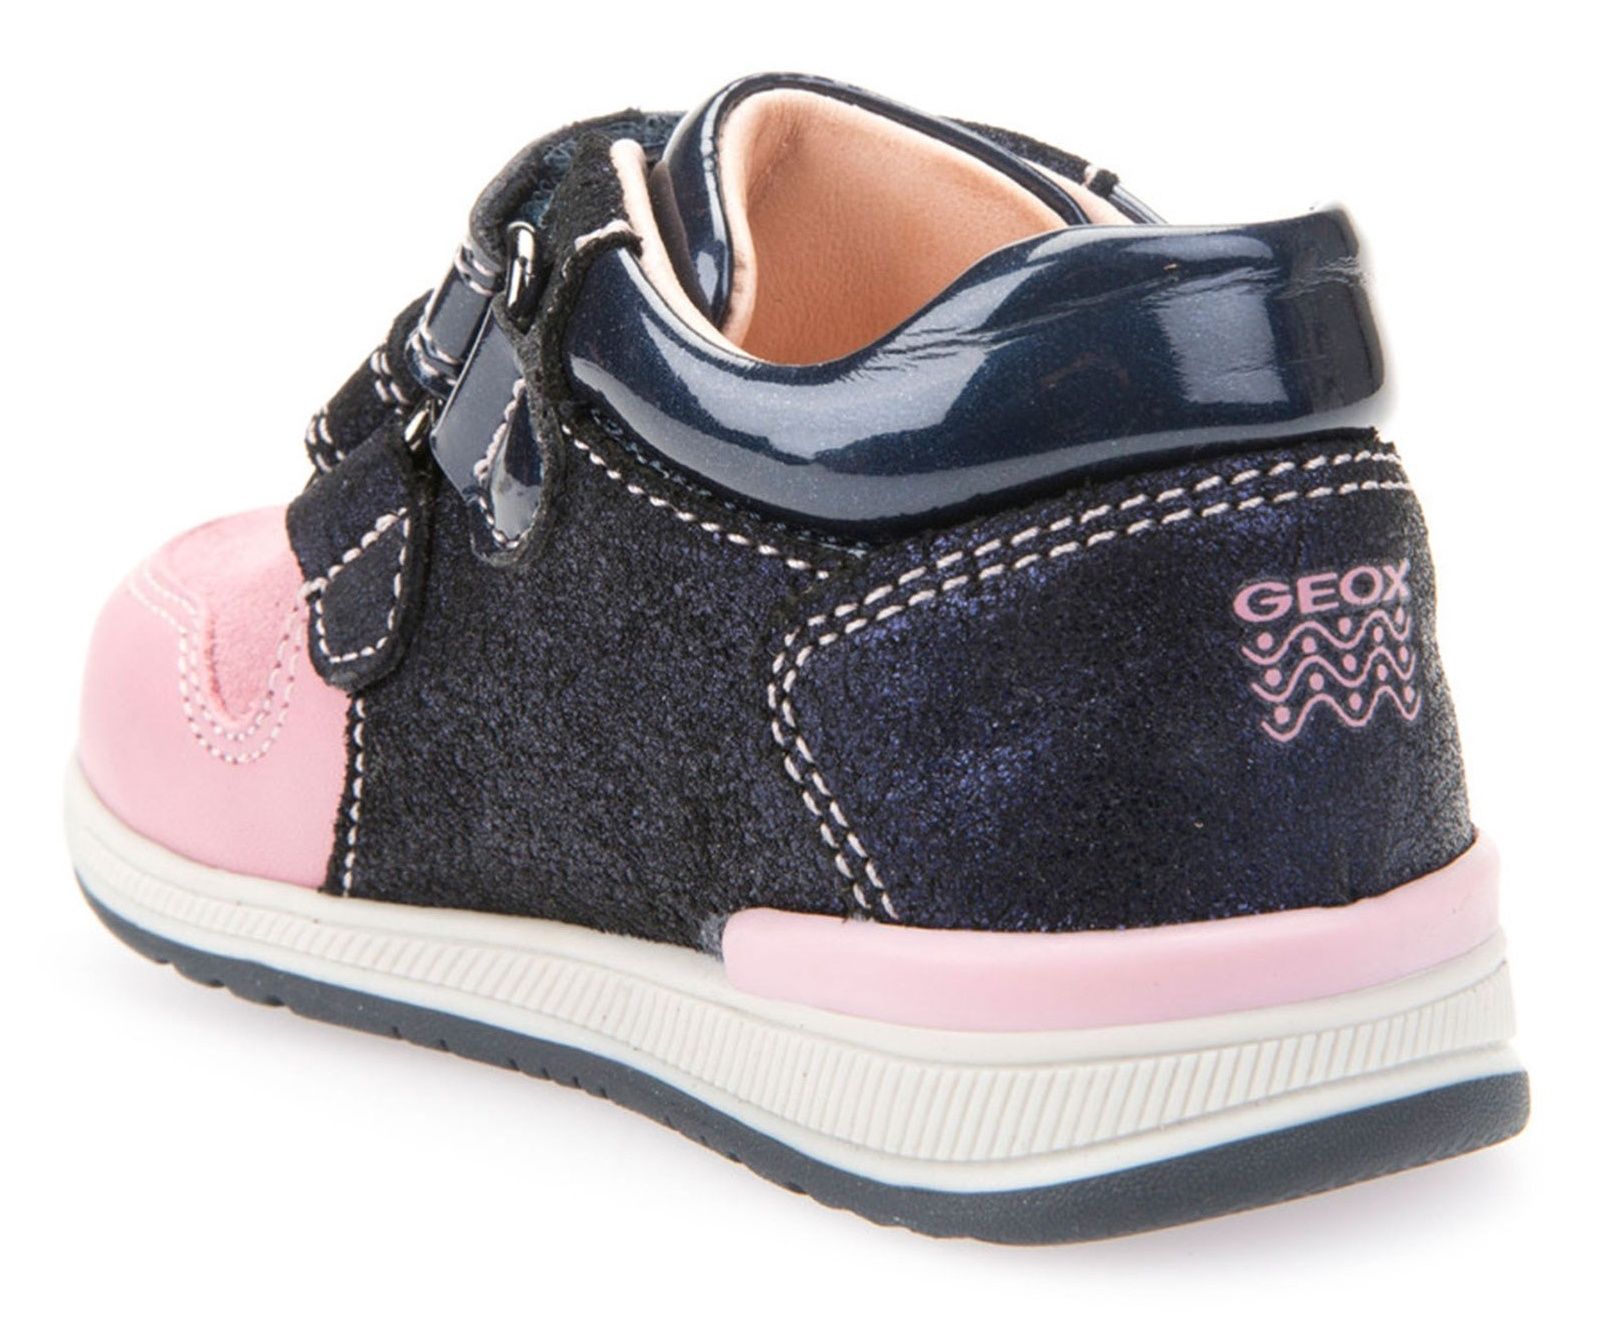 کفش چسبی نوزادی دخترانه - جی اوکس - سرمه اي و صورتي - 6